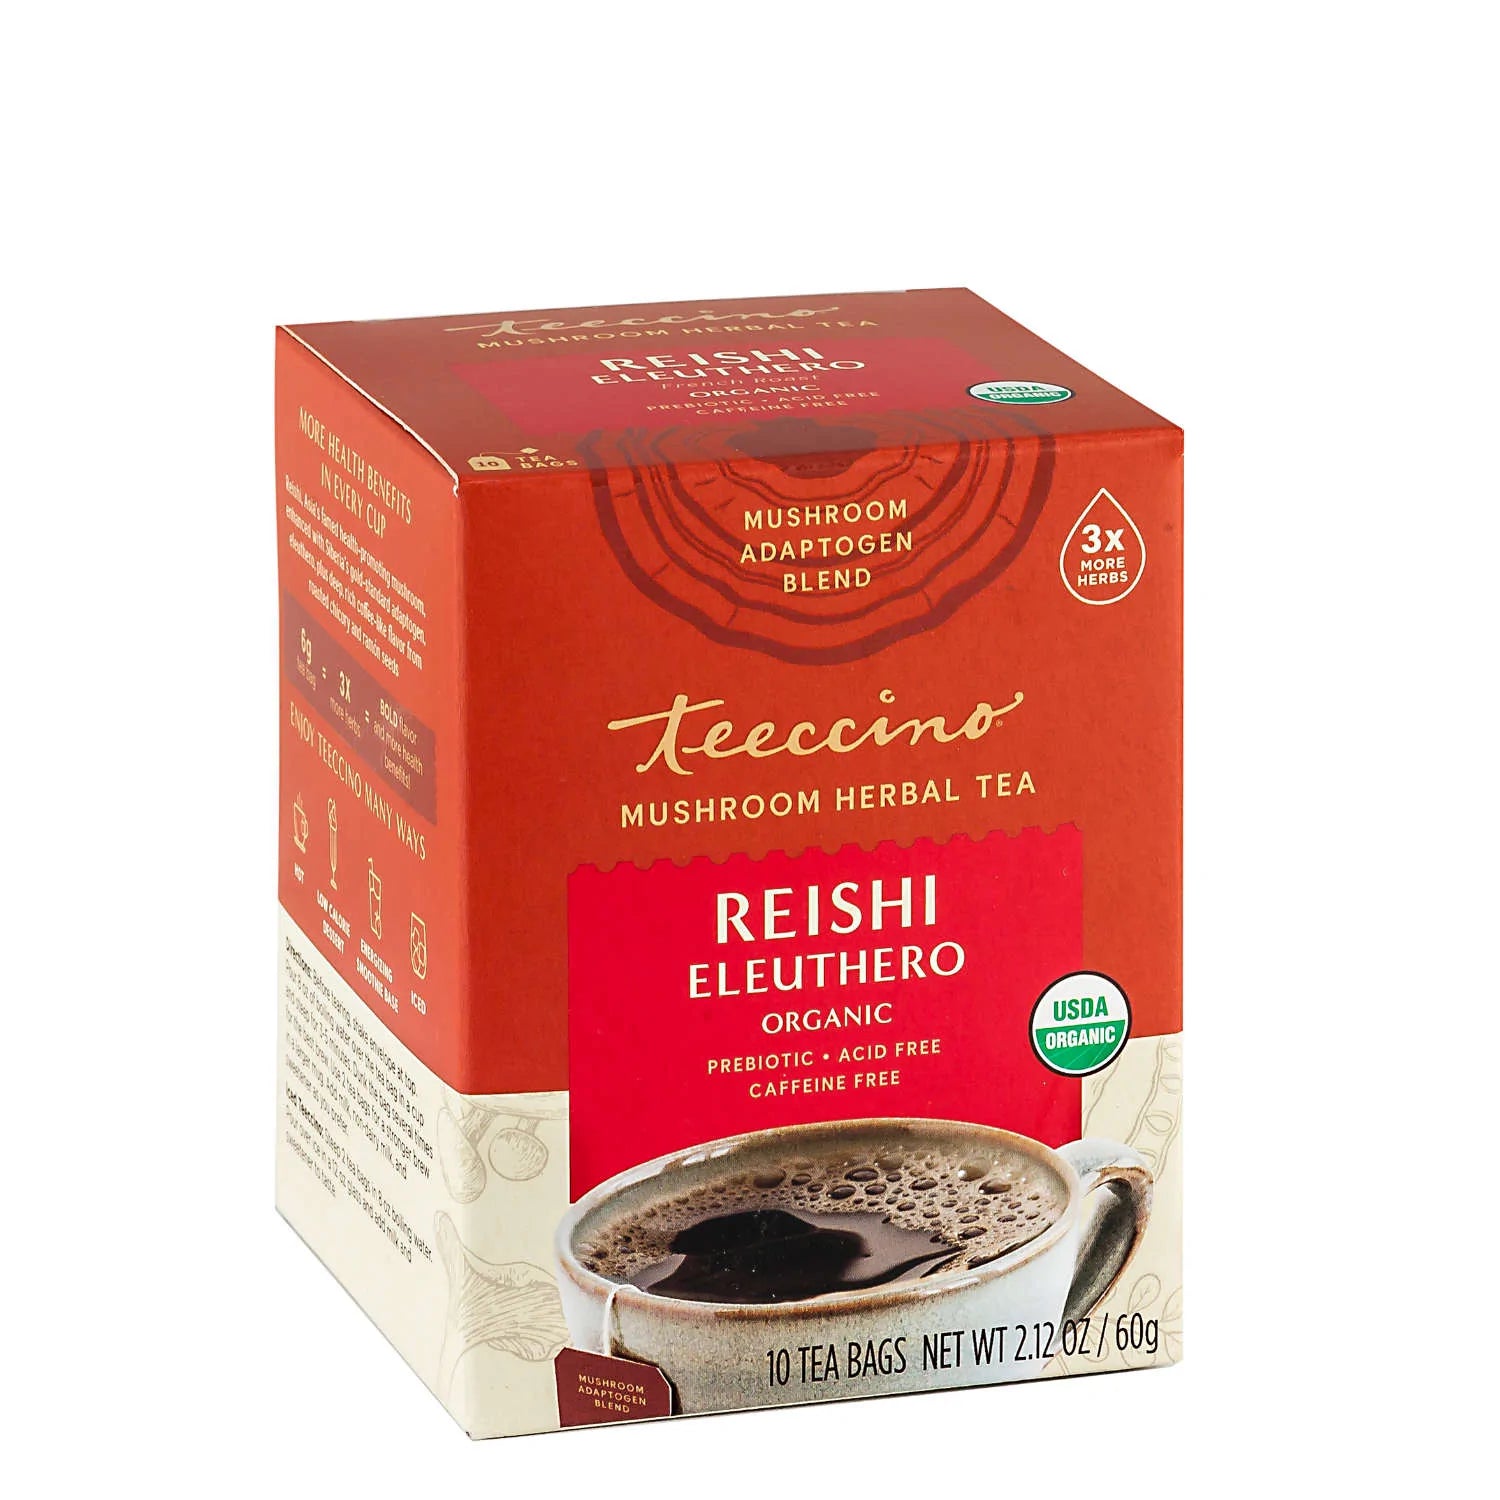 Teeccino Reishi Eleuthero French Roast Mushroom Herbal Tea 10tbags